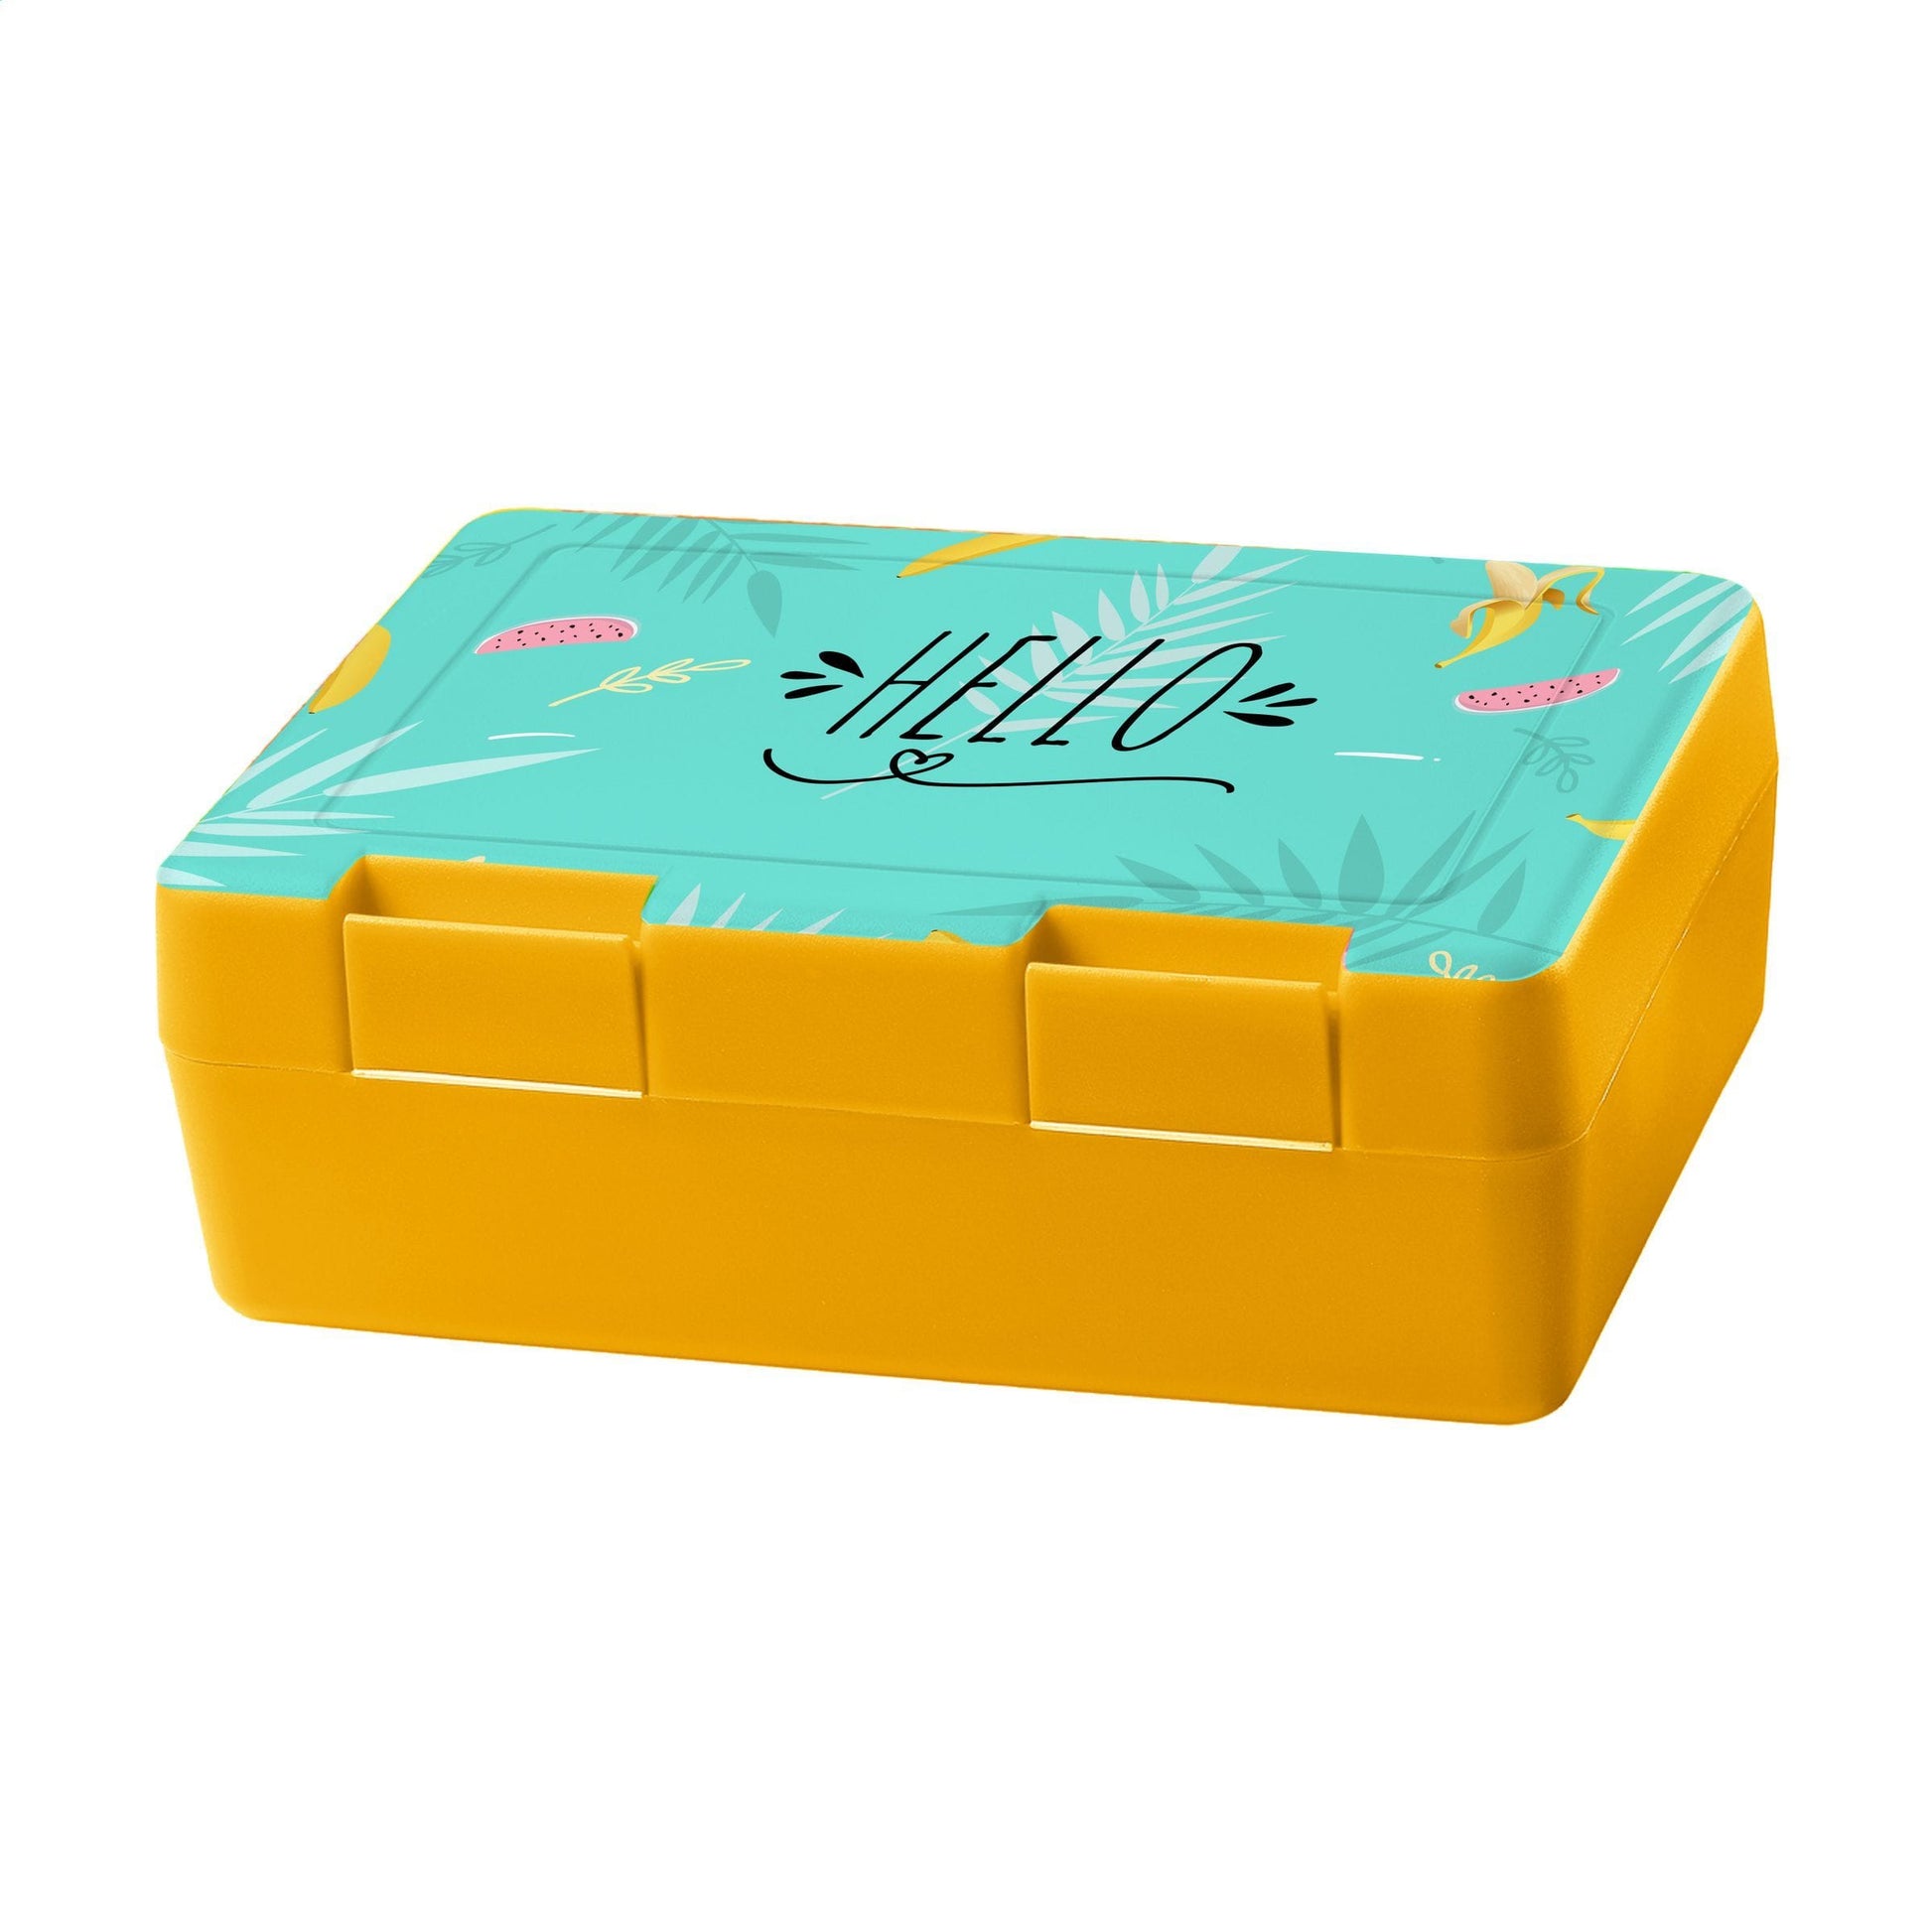 Dinner Box Lunchbox - WERBE-WELT.SHOP